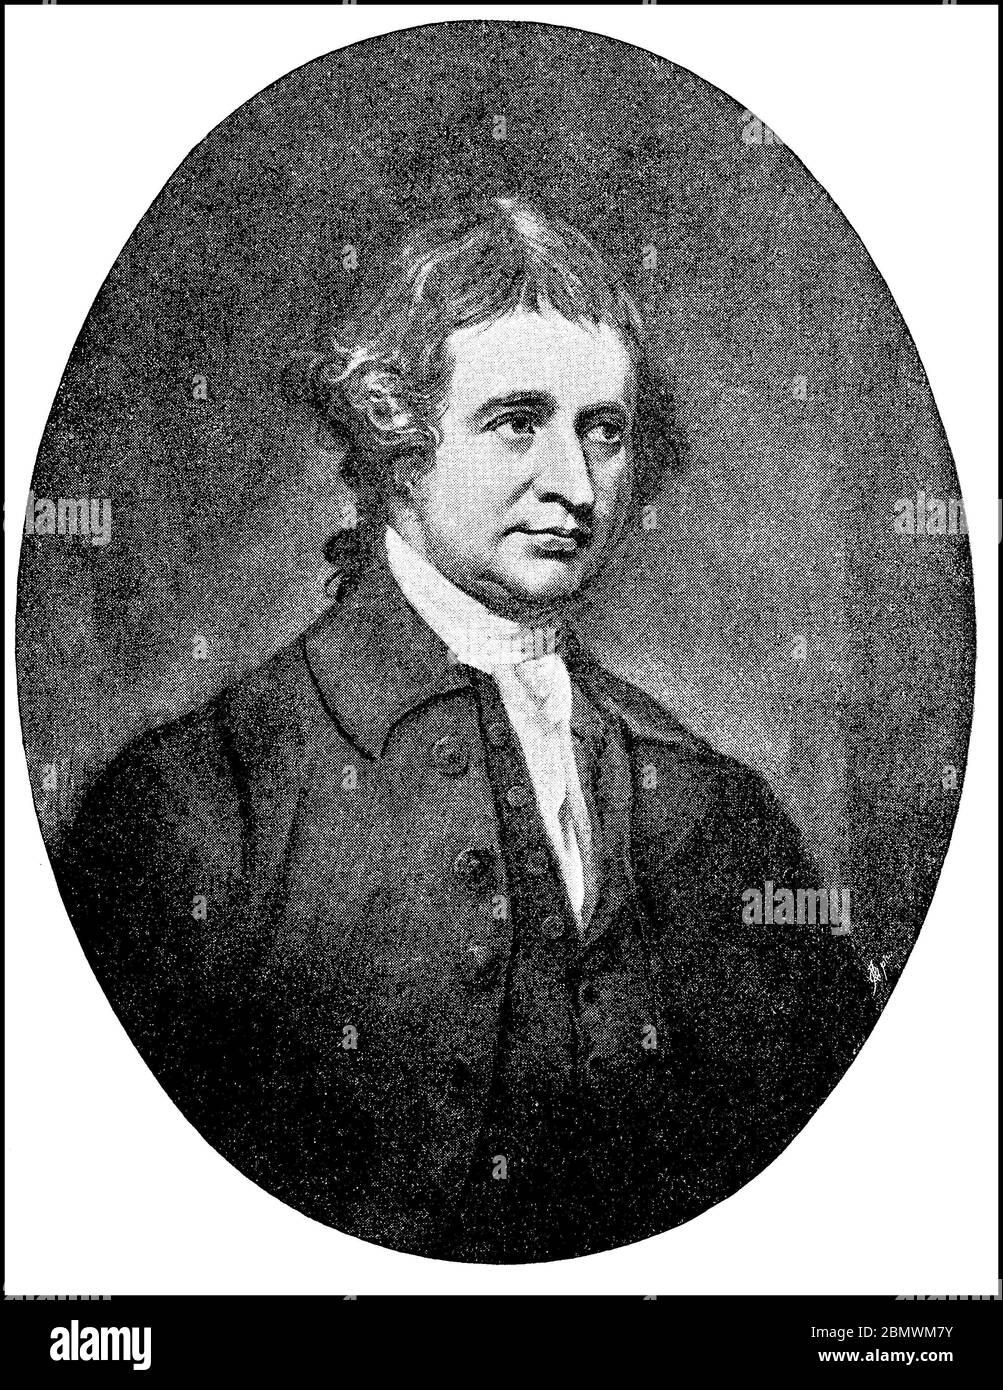 Edmund Burke, 12. Januar 1729 - 9. Juli 1797, war ein irisch-britischer Schriftsteller, ehemaliger Theoretiker der philosophischen Disziplin der Ästhetik, politischer Philosoph und Politiker im Zeitalter der Aufklärung / Edmund Burke, 12. Januar 1729 - 9. Juli 1797, war ein irisch-britischer Schriftsteller, früher Theoretiker der philosophischen Disziplin der Ästhetik, Staatsphilosophie und Politiker in der Zeit der Aufklärung, historisch, historisch, digital verbesserte Reproduktion eines Originals aus dem 19. Jahrhundert / digitale Reproduktion einer Originalvorlage aus dem 19. Jahrhundert, Stockfoto